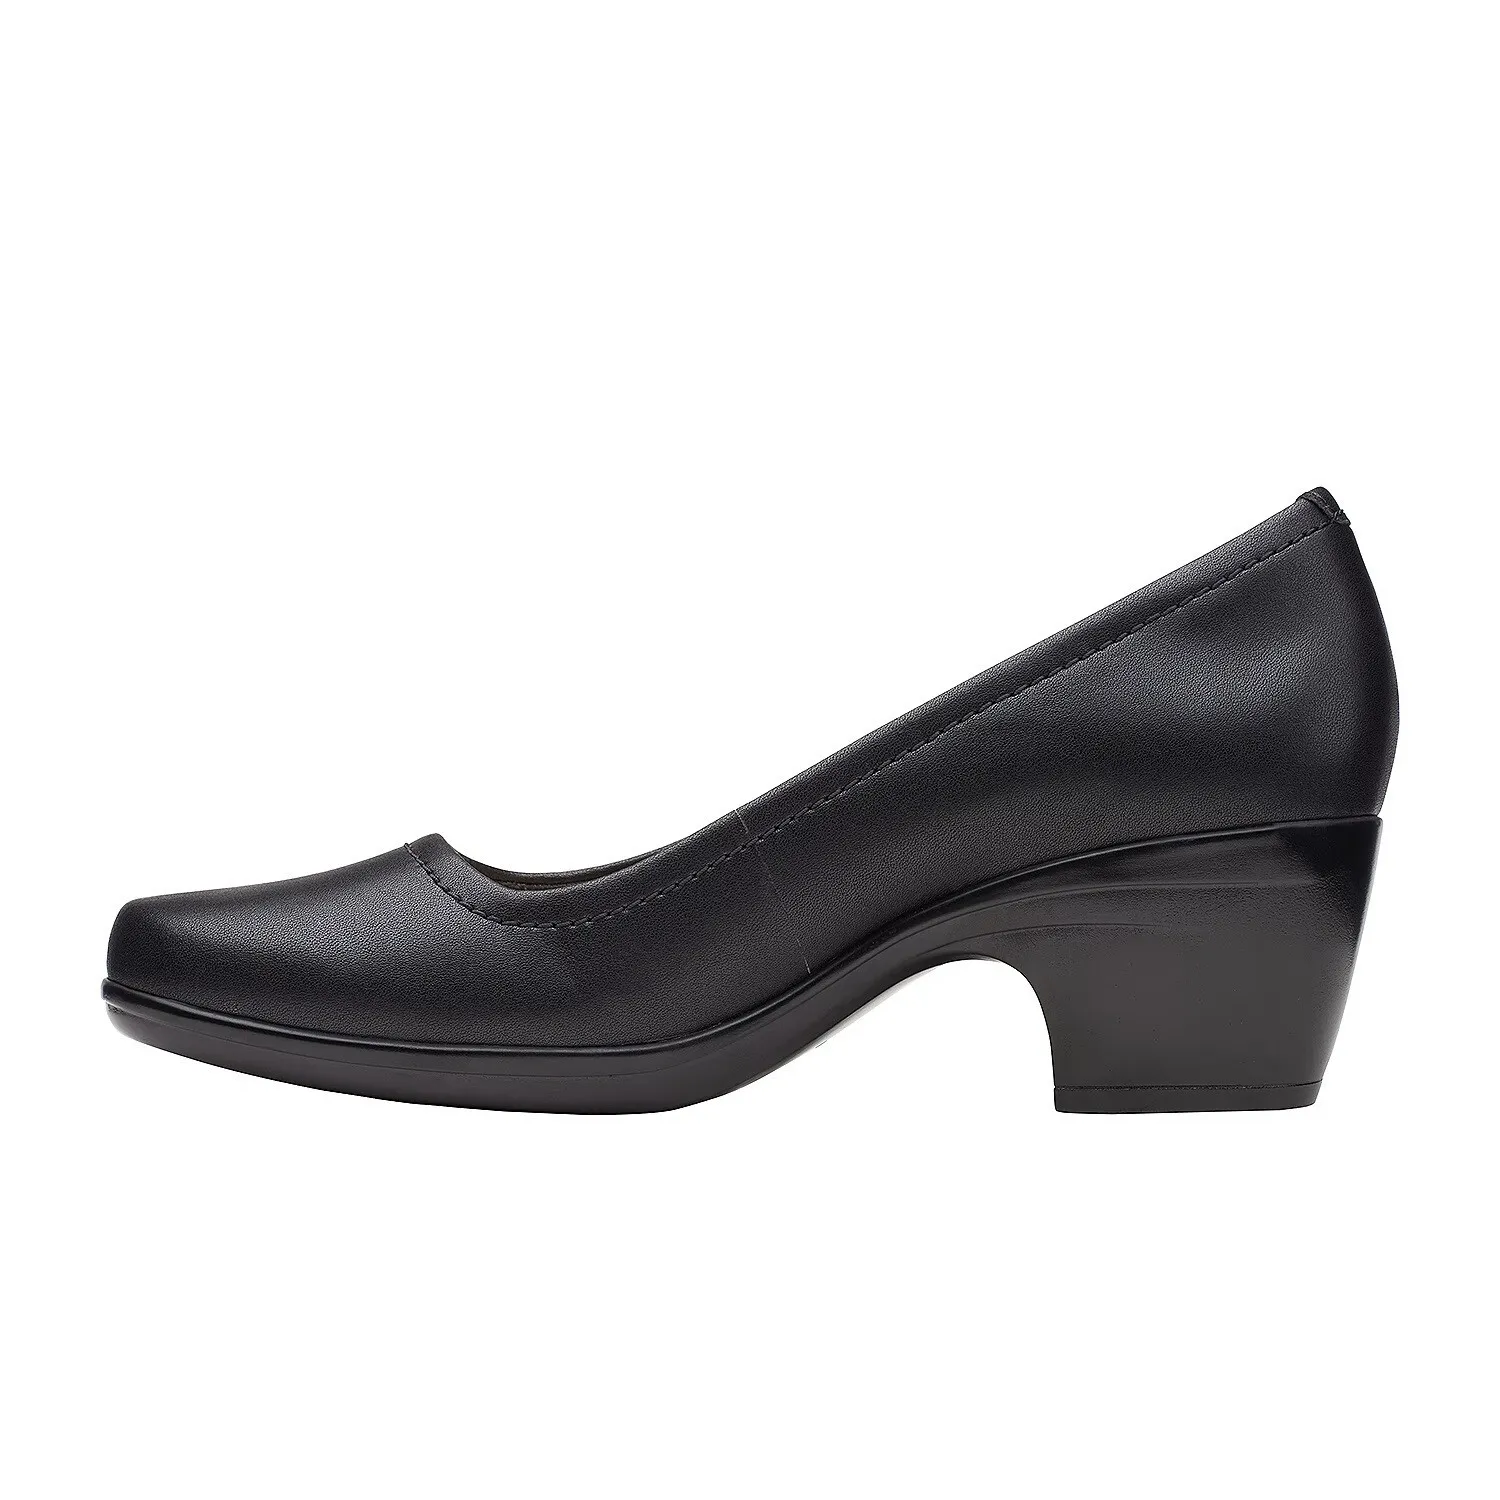 Женские туфли-лодочки Clarks, черные, цвет черный, размер 39 - фото 4